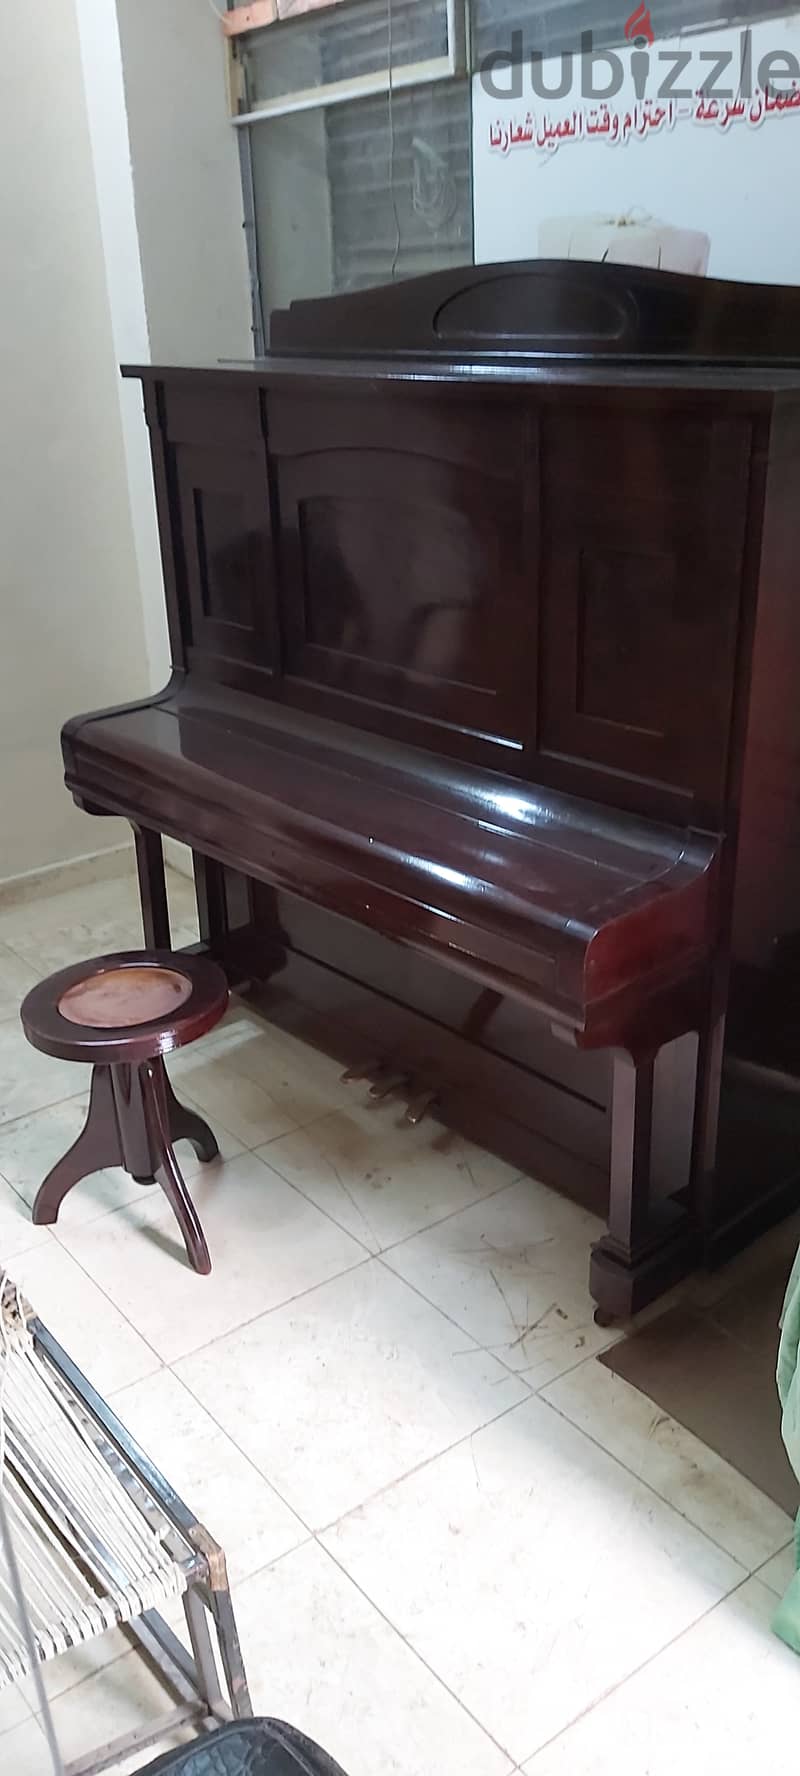 بيانو للبيع 15